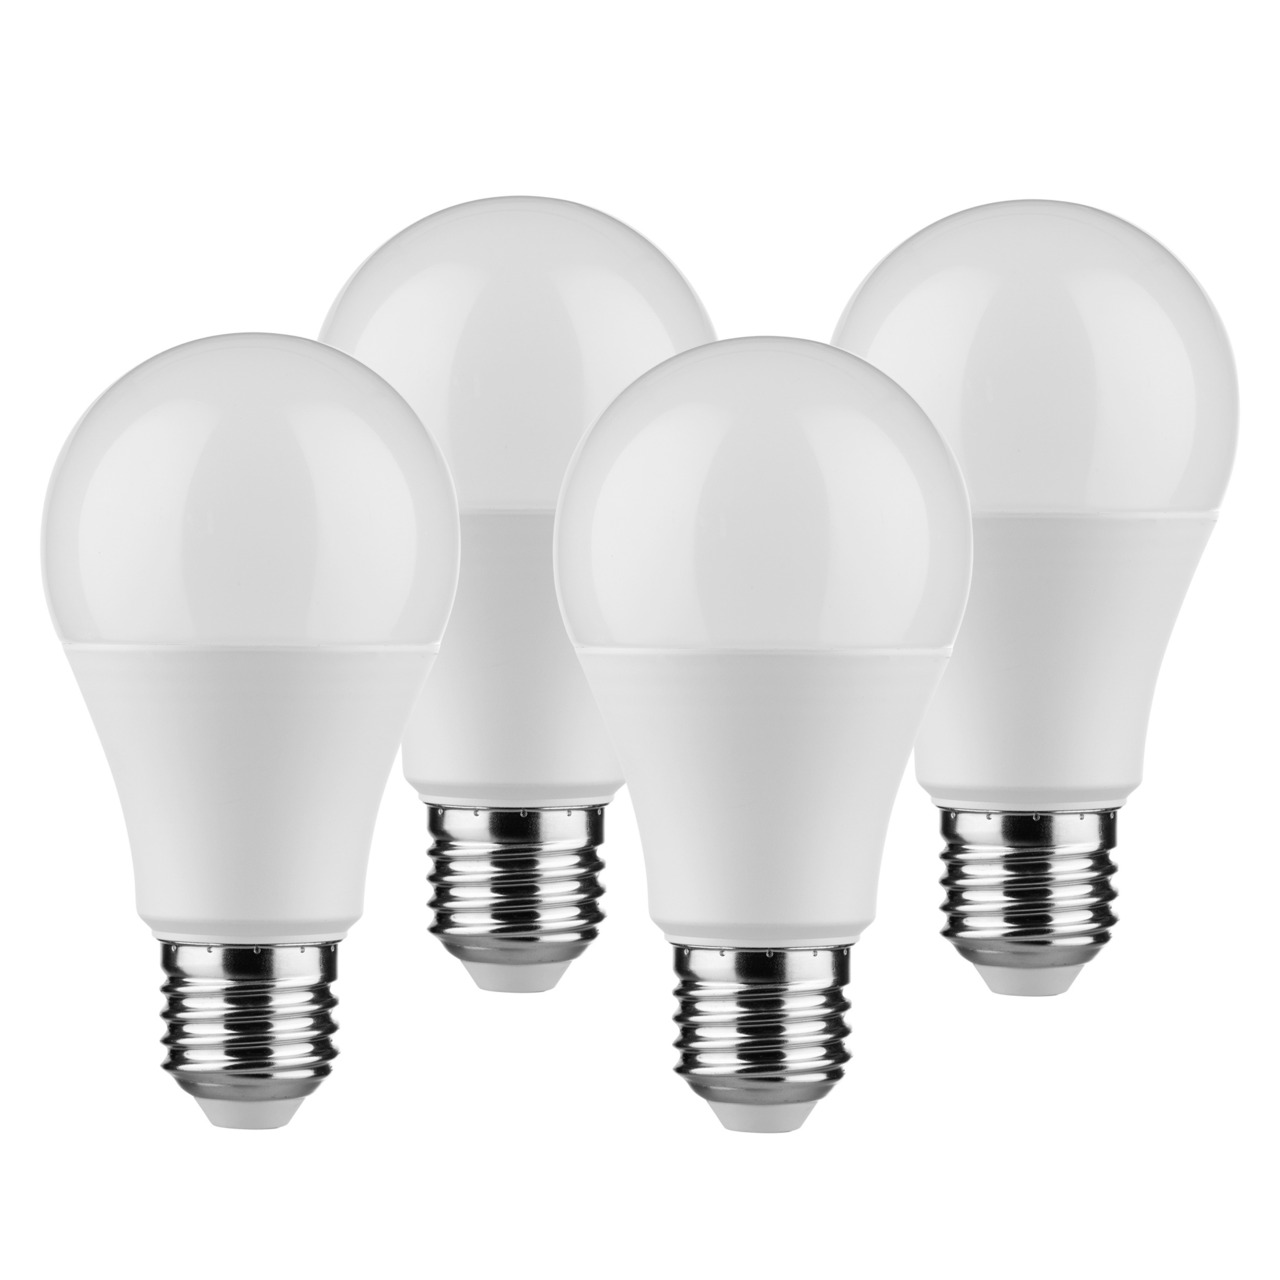 Mller Licht 4er-Pack 9-W-LED-Lampen E27- warmweiss- 806 lm